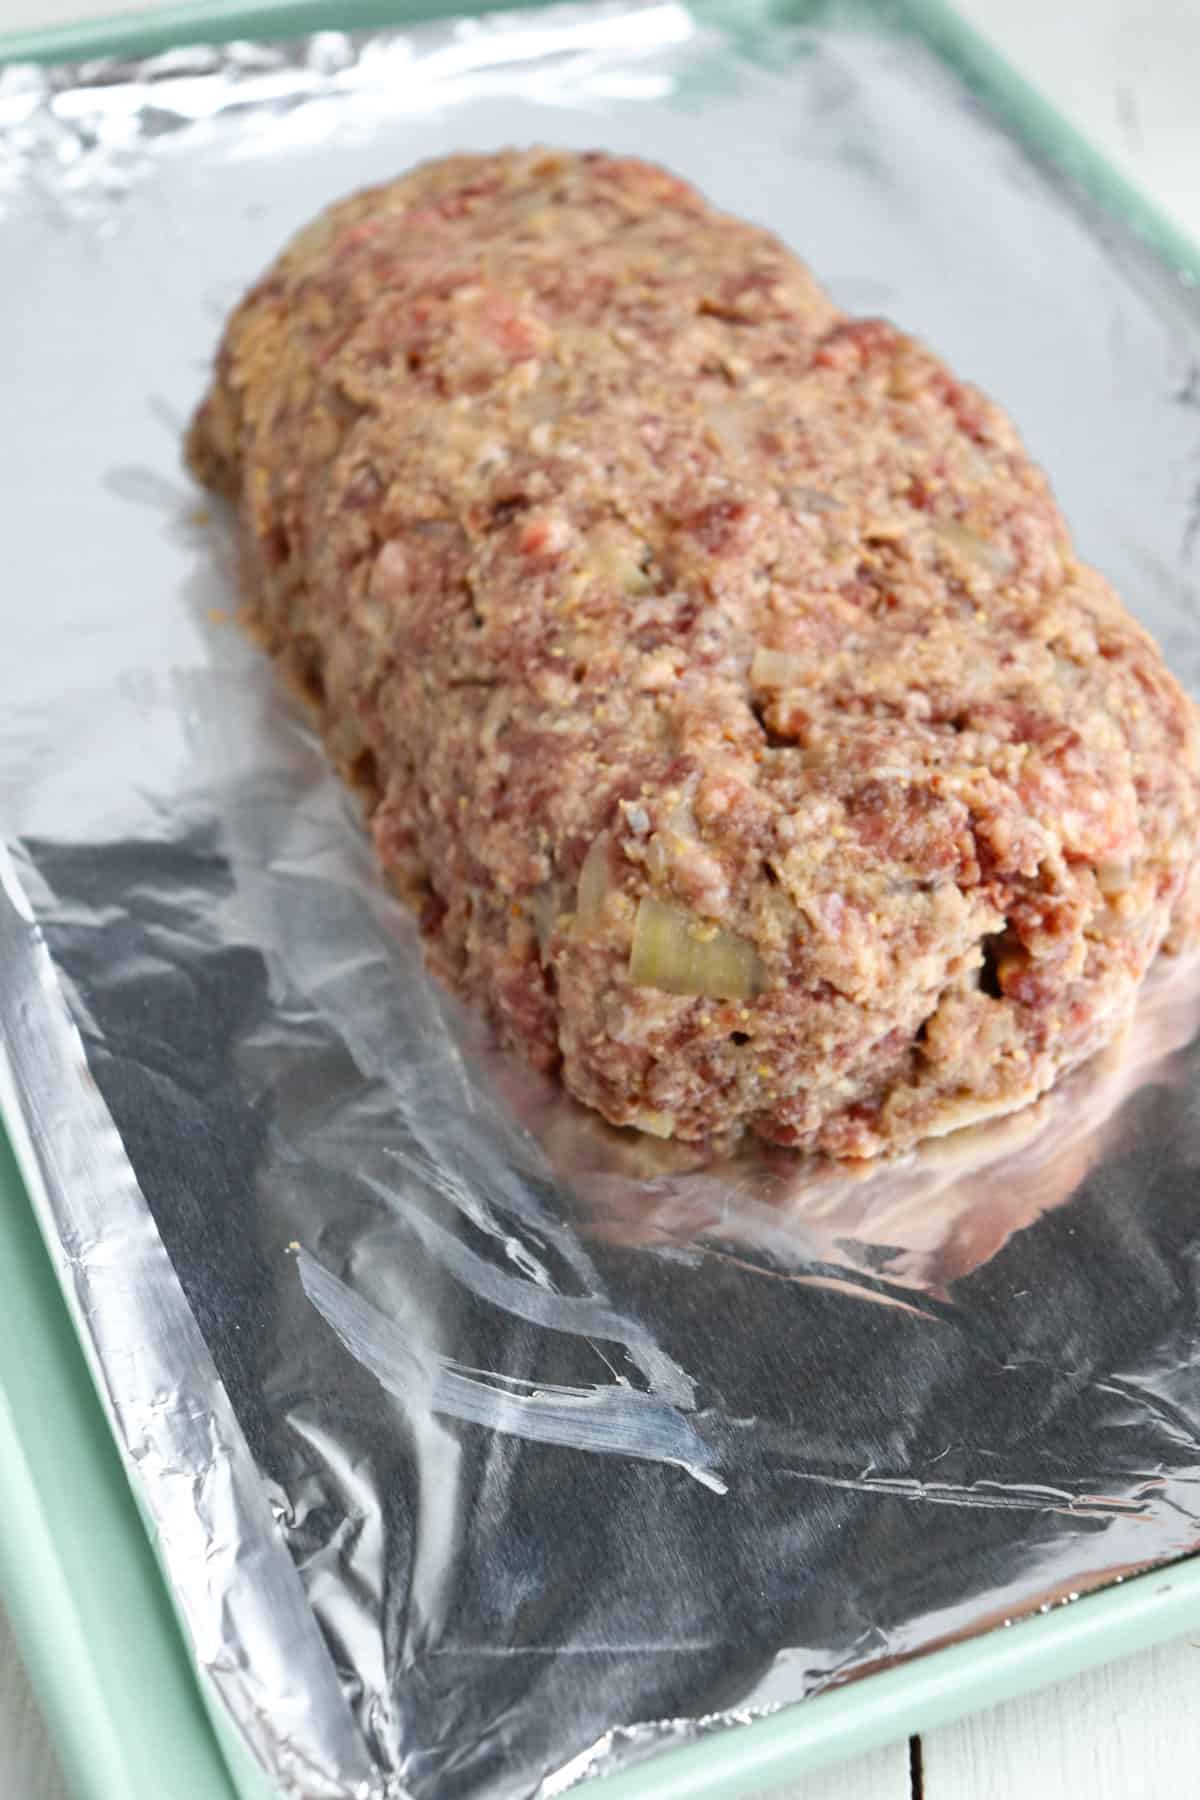 venison meatloaf on sheet pan.